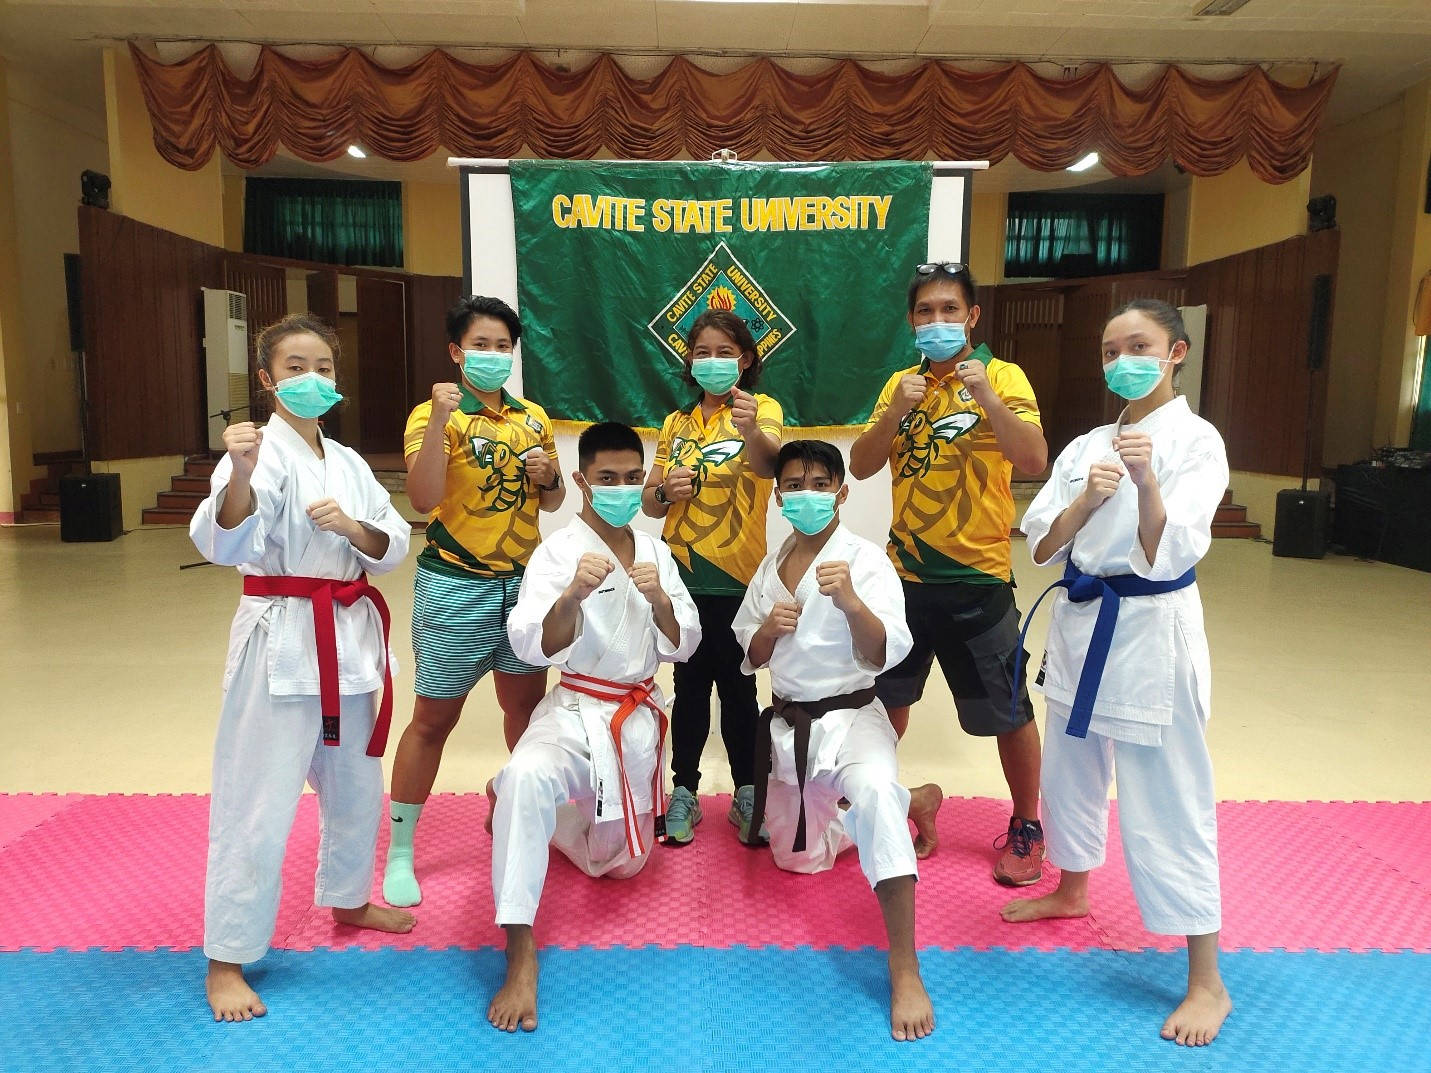 Studentidi Karate Con Maschere, Cavite State University Sfondo